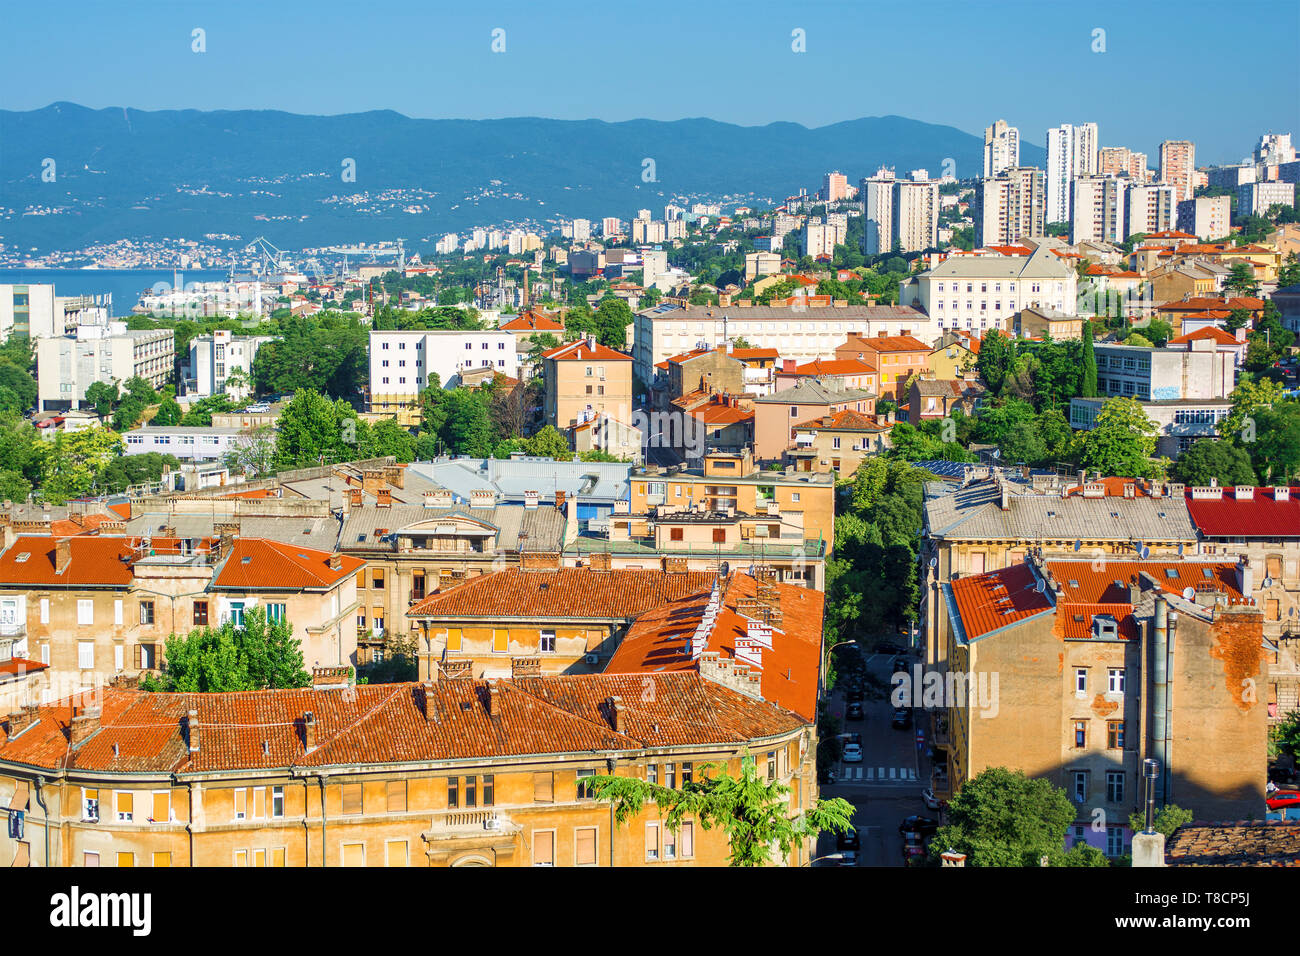 Cityscape of Rijeka in Croatia Stock Photo